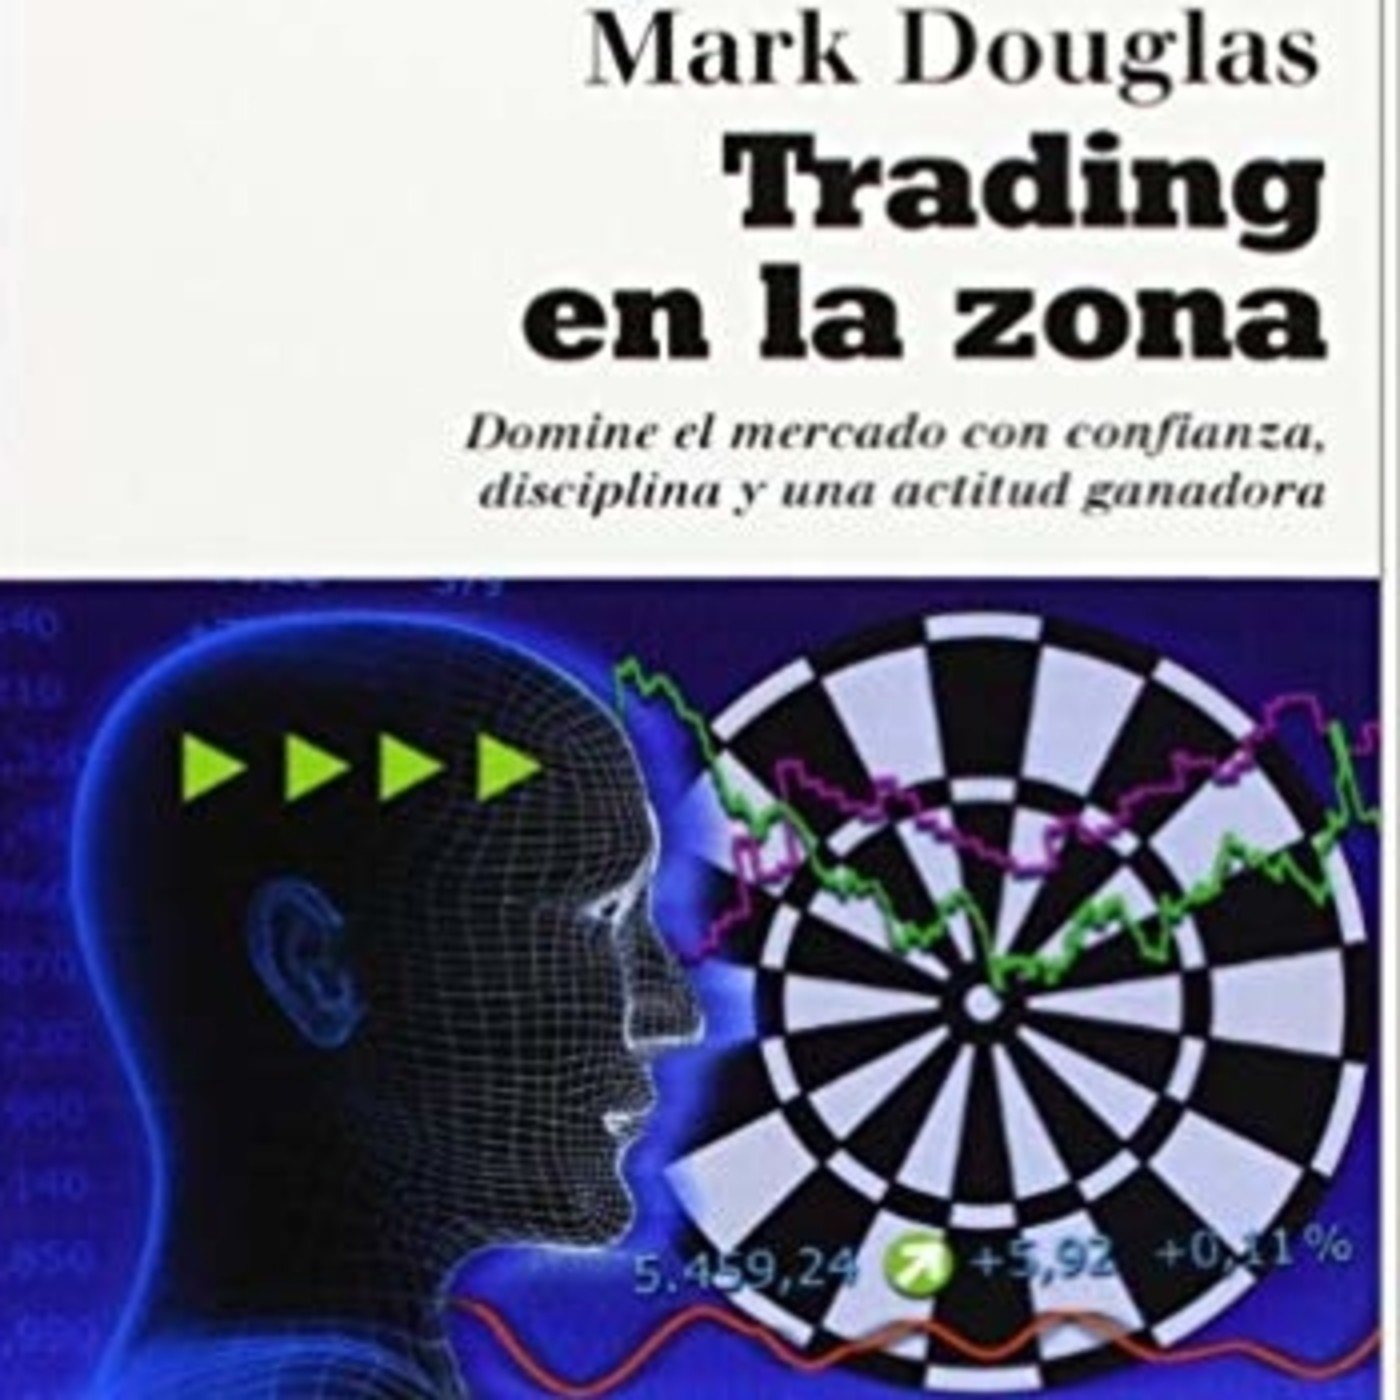 CAP 11 Trading en la Zona Mark Douglas Audiolibro completo libros para traders